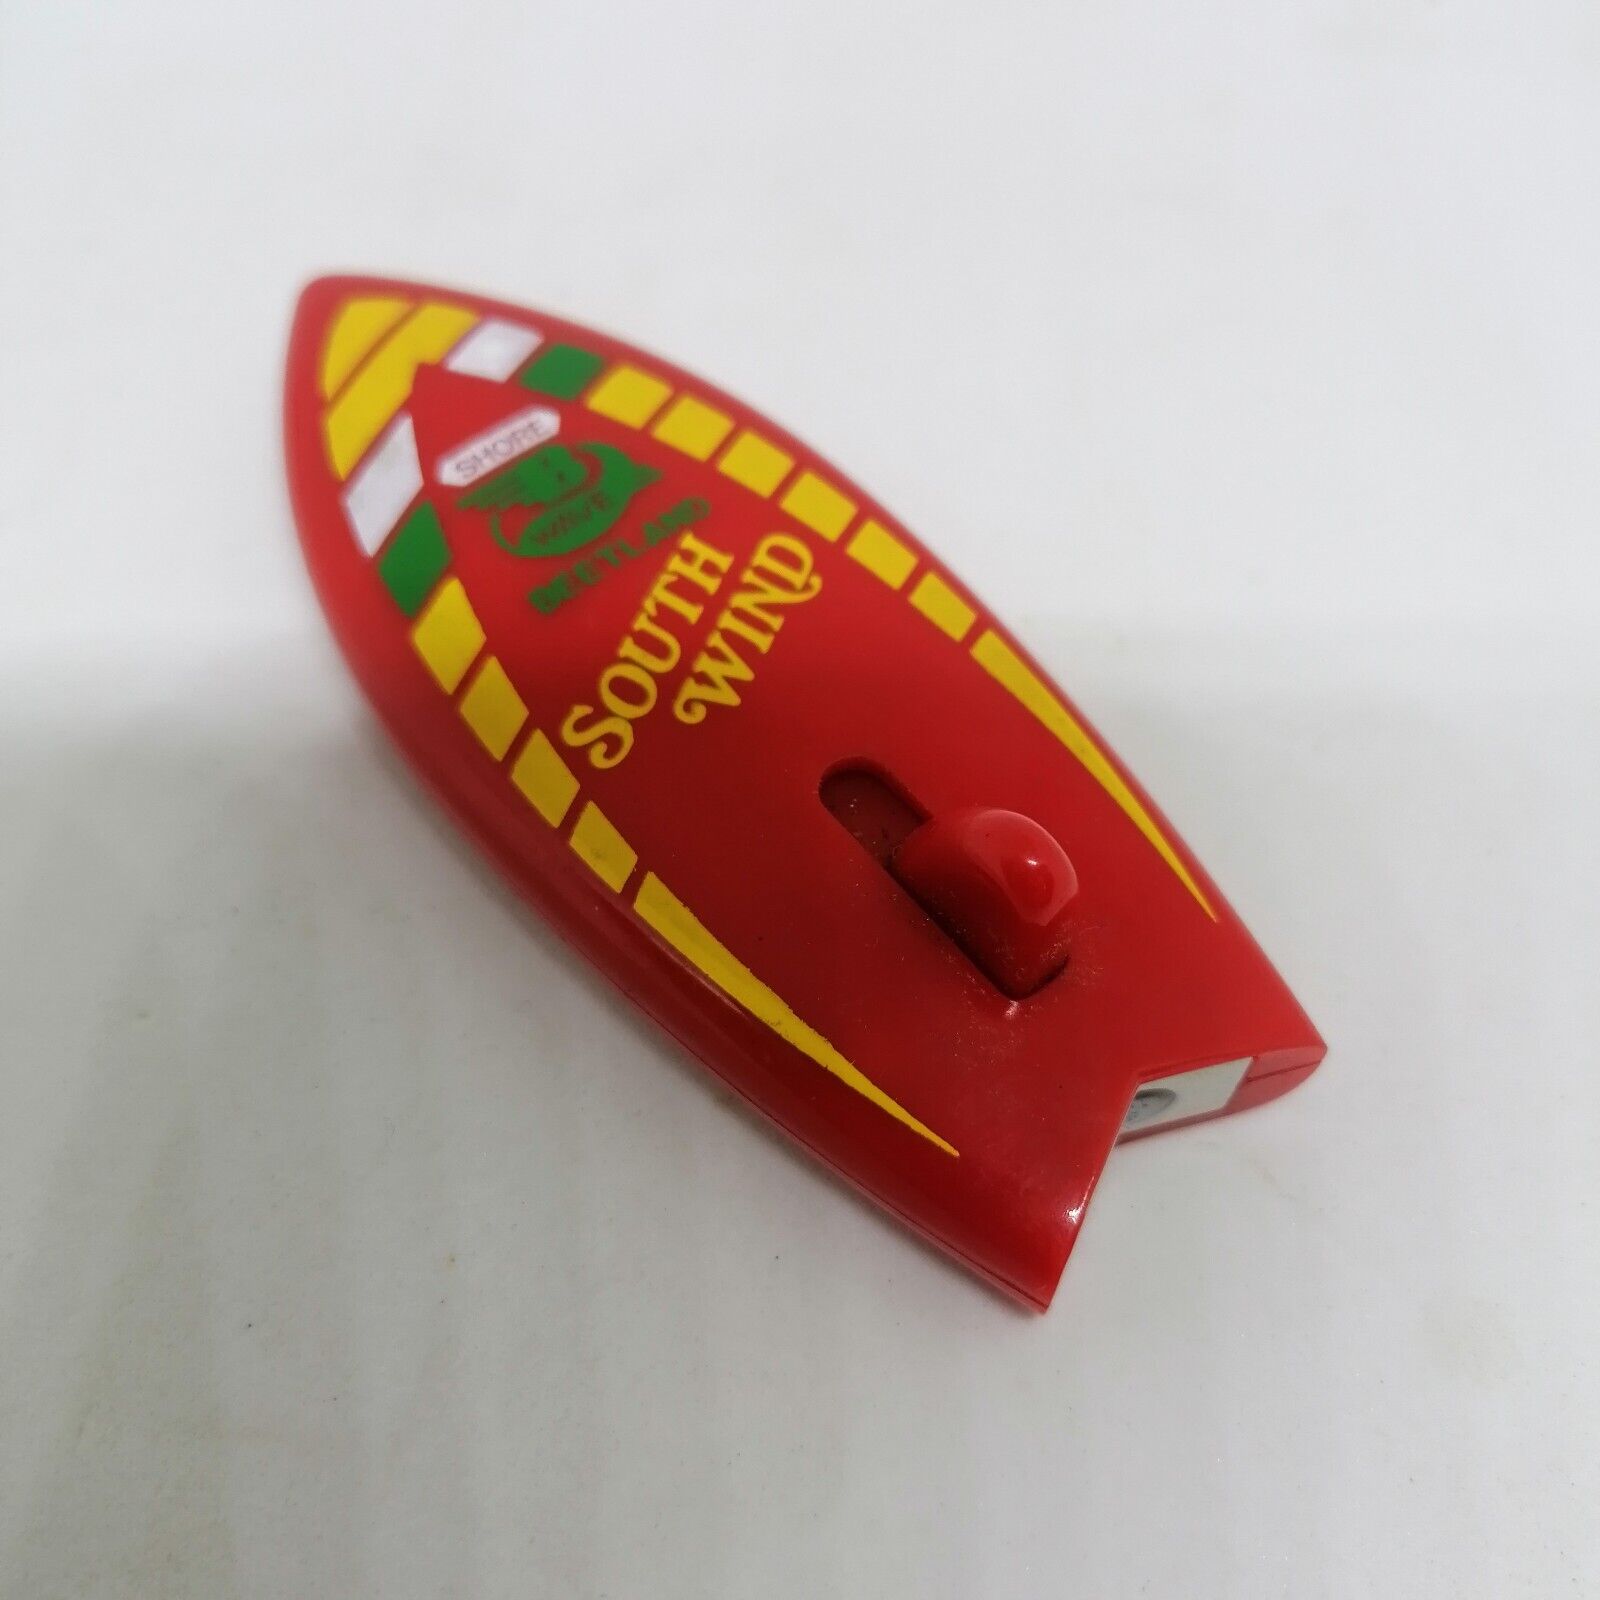 Vintage BEETLAND Lighter 1987 Korea SURF BOARD Red